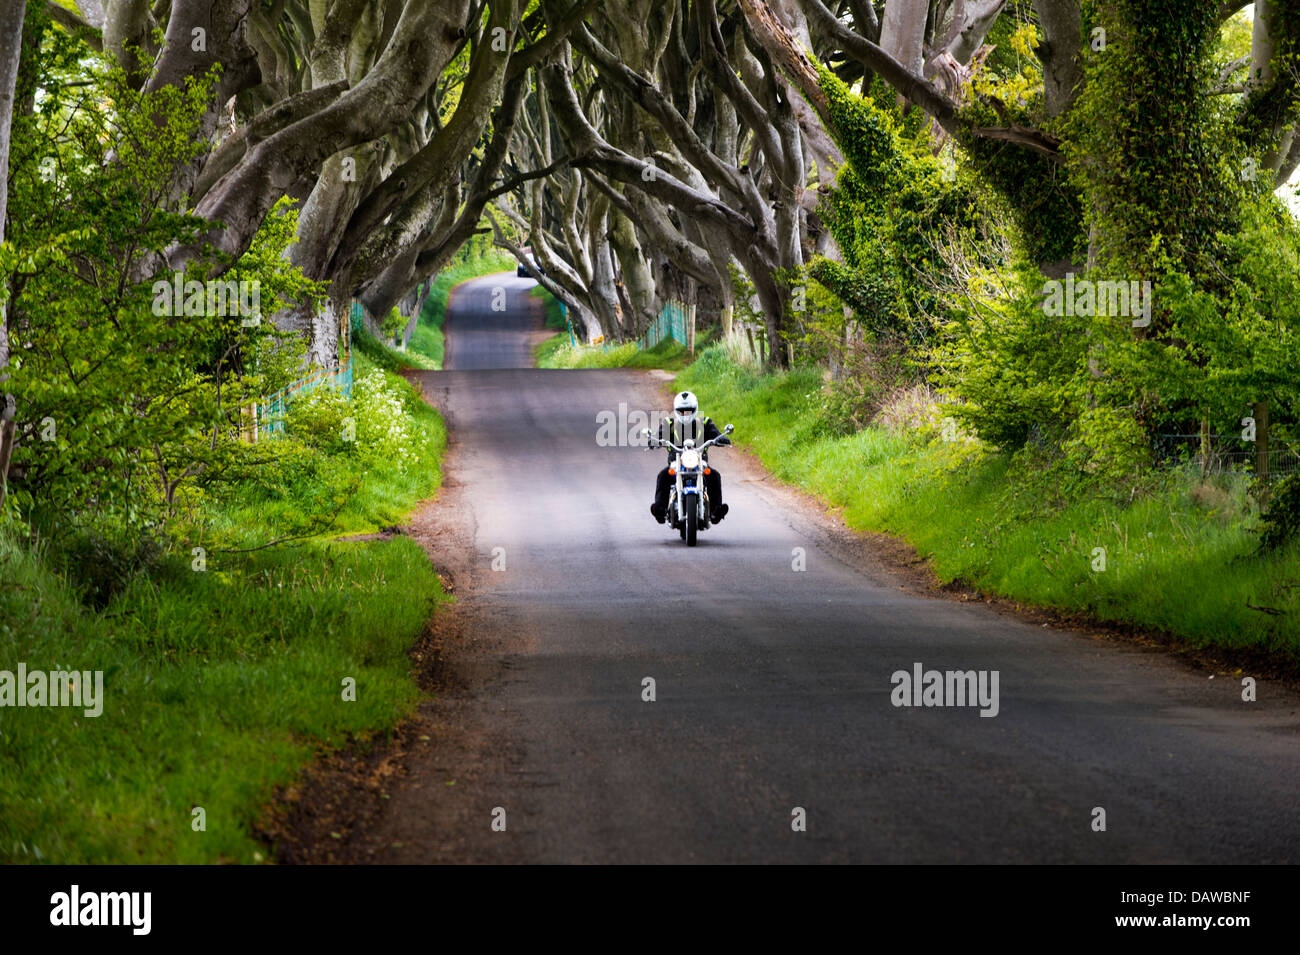 Voyages Moto à travers les haies, sombre Bregagh Road, Ballymoney, comté d'Antrim, en Irlande du Nord, Royaume-Uni Banque D'Images